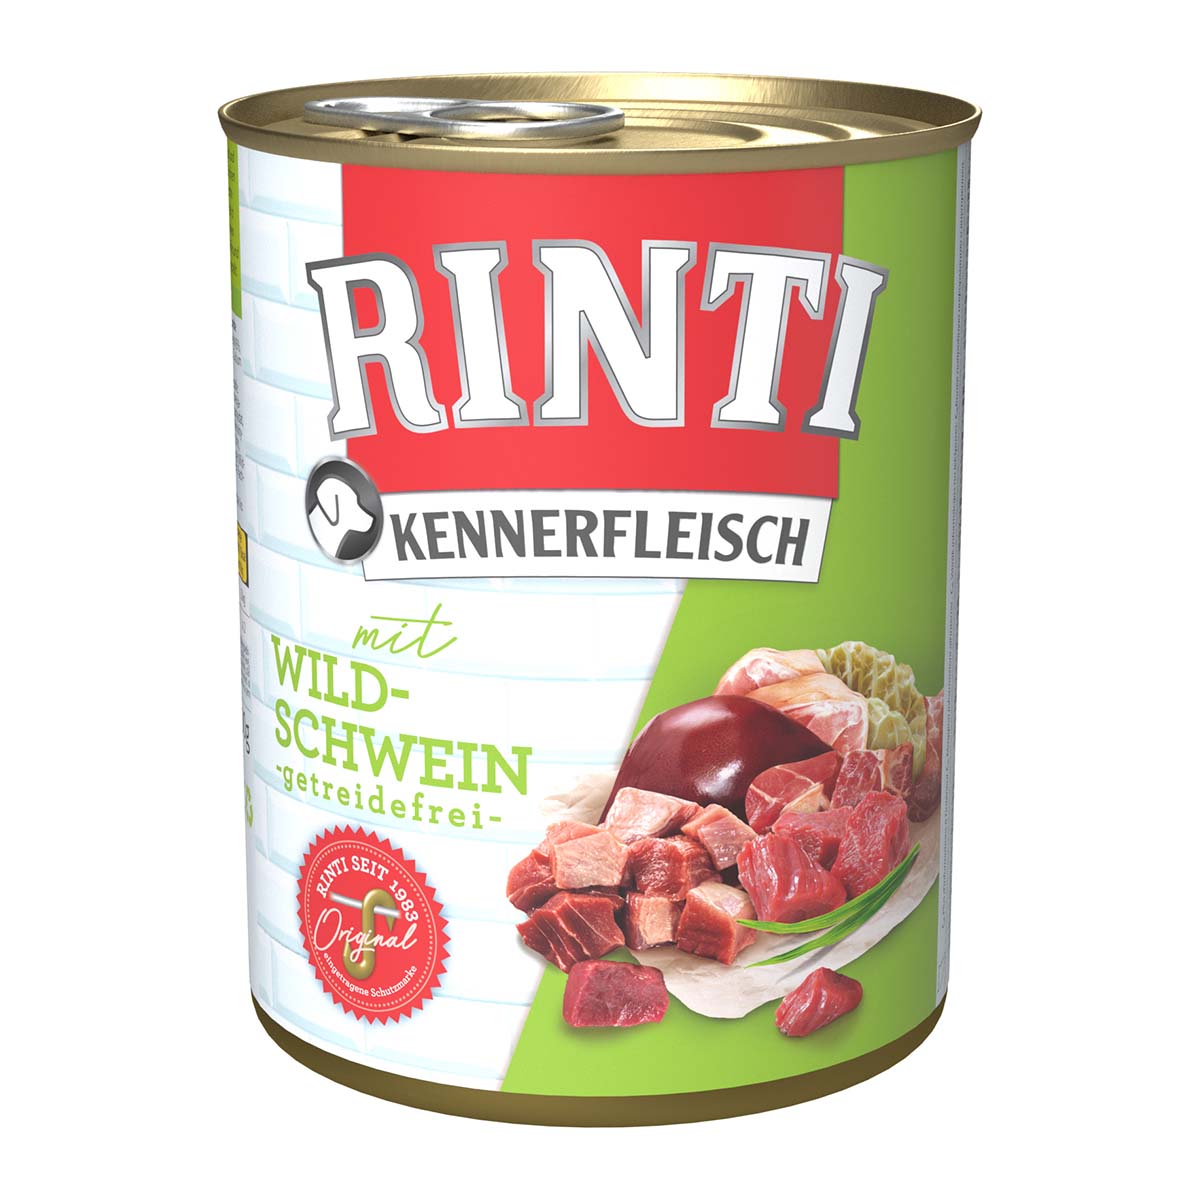 Rinti Kennerfleisch mit Wildschwein 24x800g